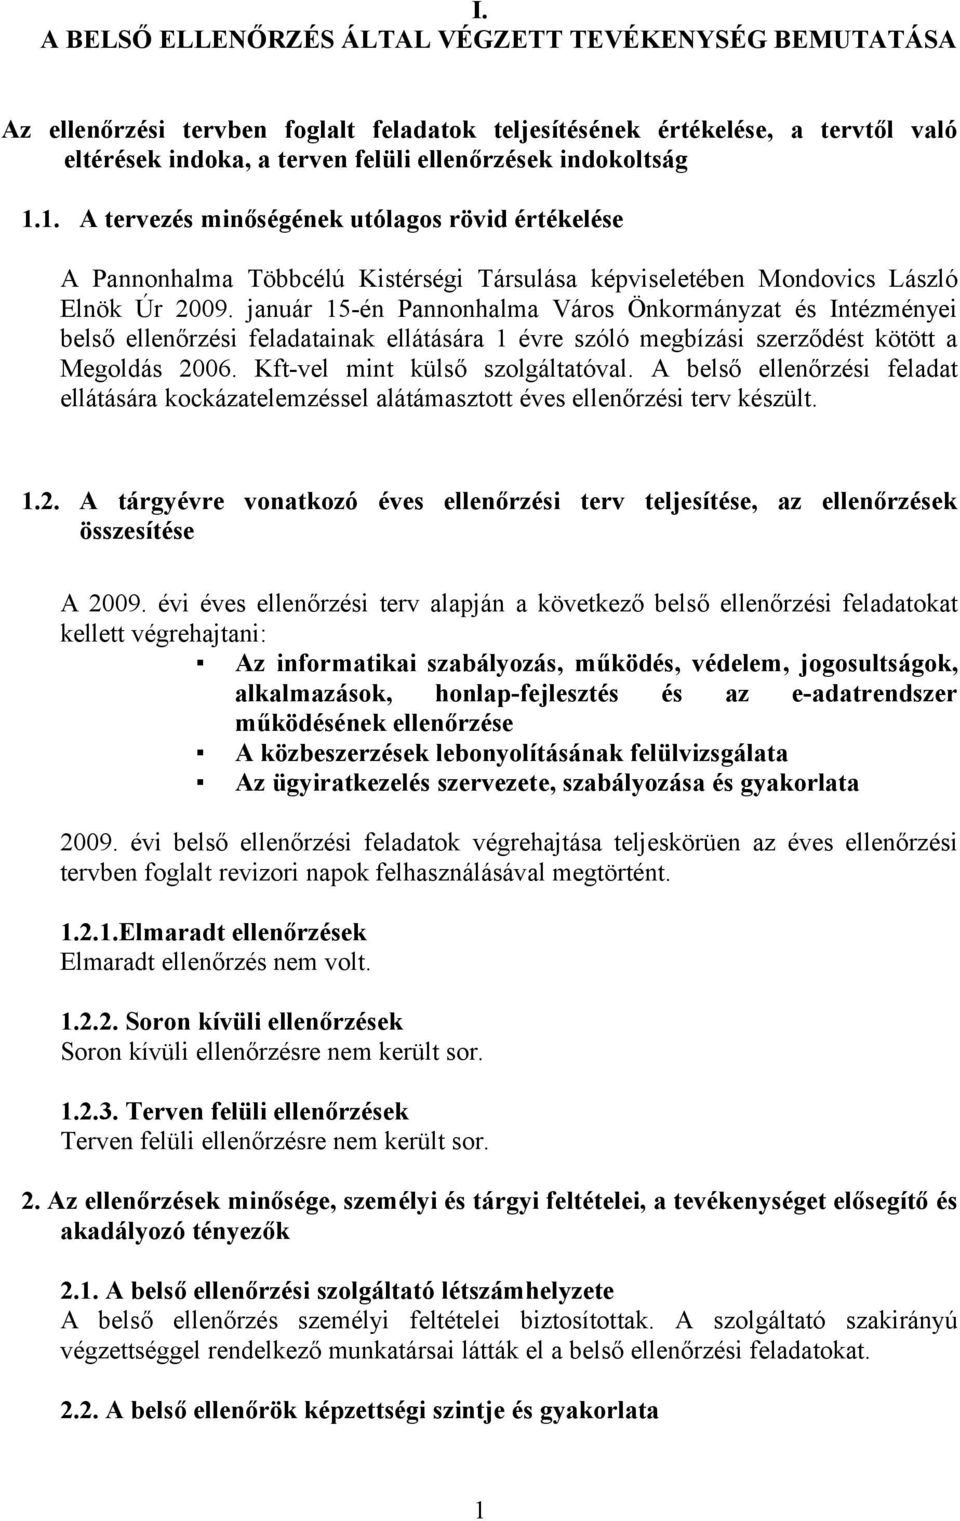 január 15-én Pannonhalma Város Önkormányzat és Intézményei belső ellenőrzési feladatainak ellátására 1 évre szóló megbízási szerződést kötött a Megoldás 2006. Kft-vel mint külső szolgáltatóval.